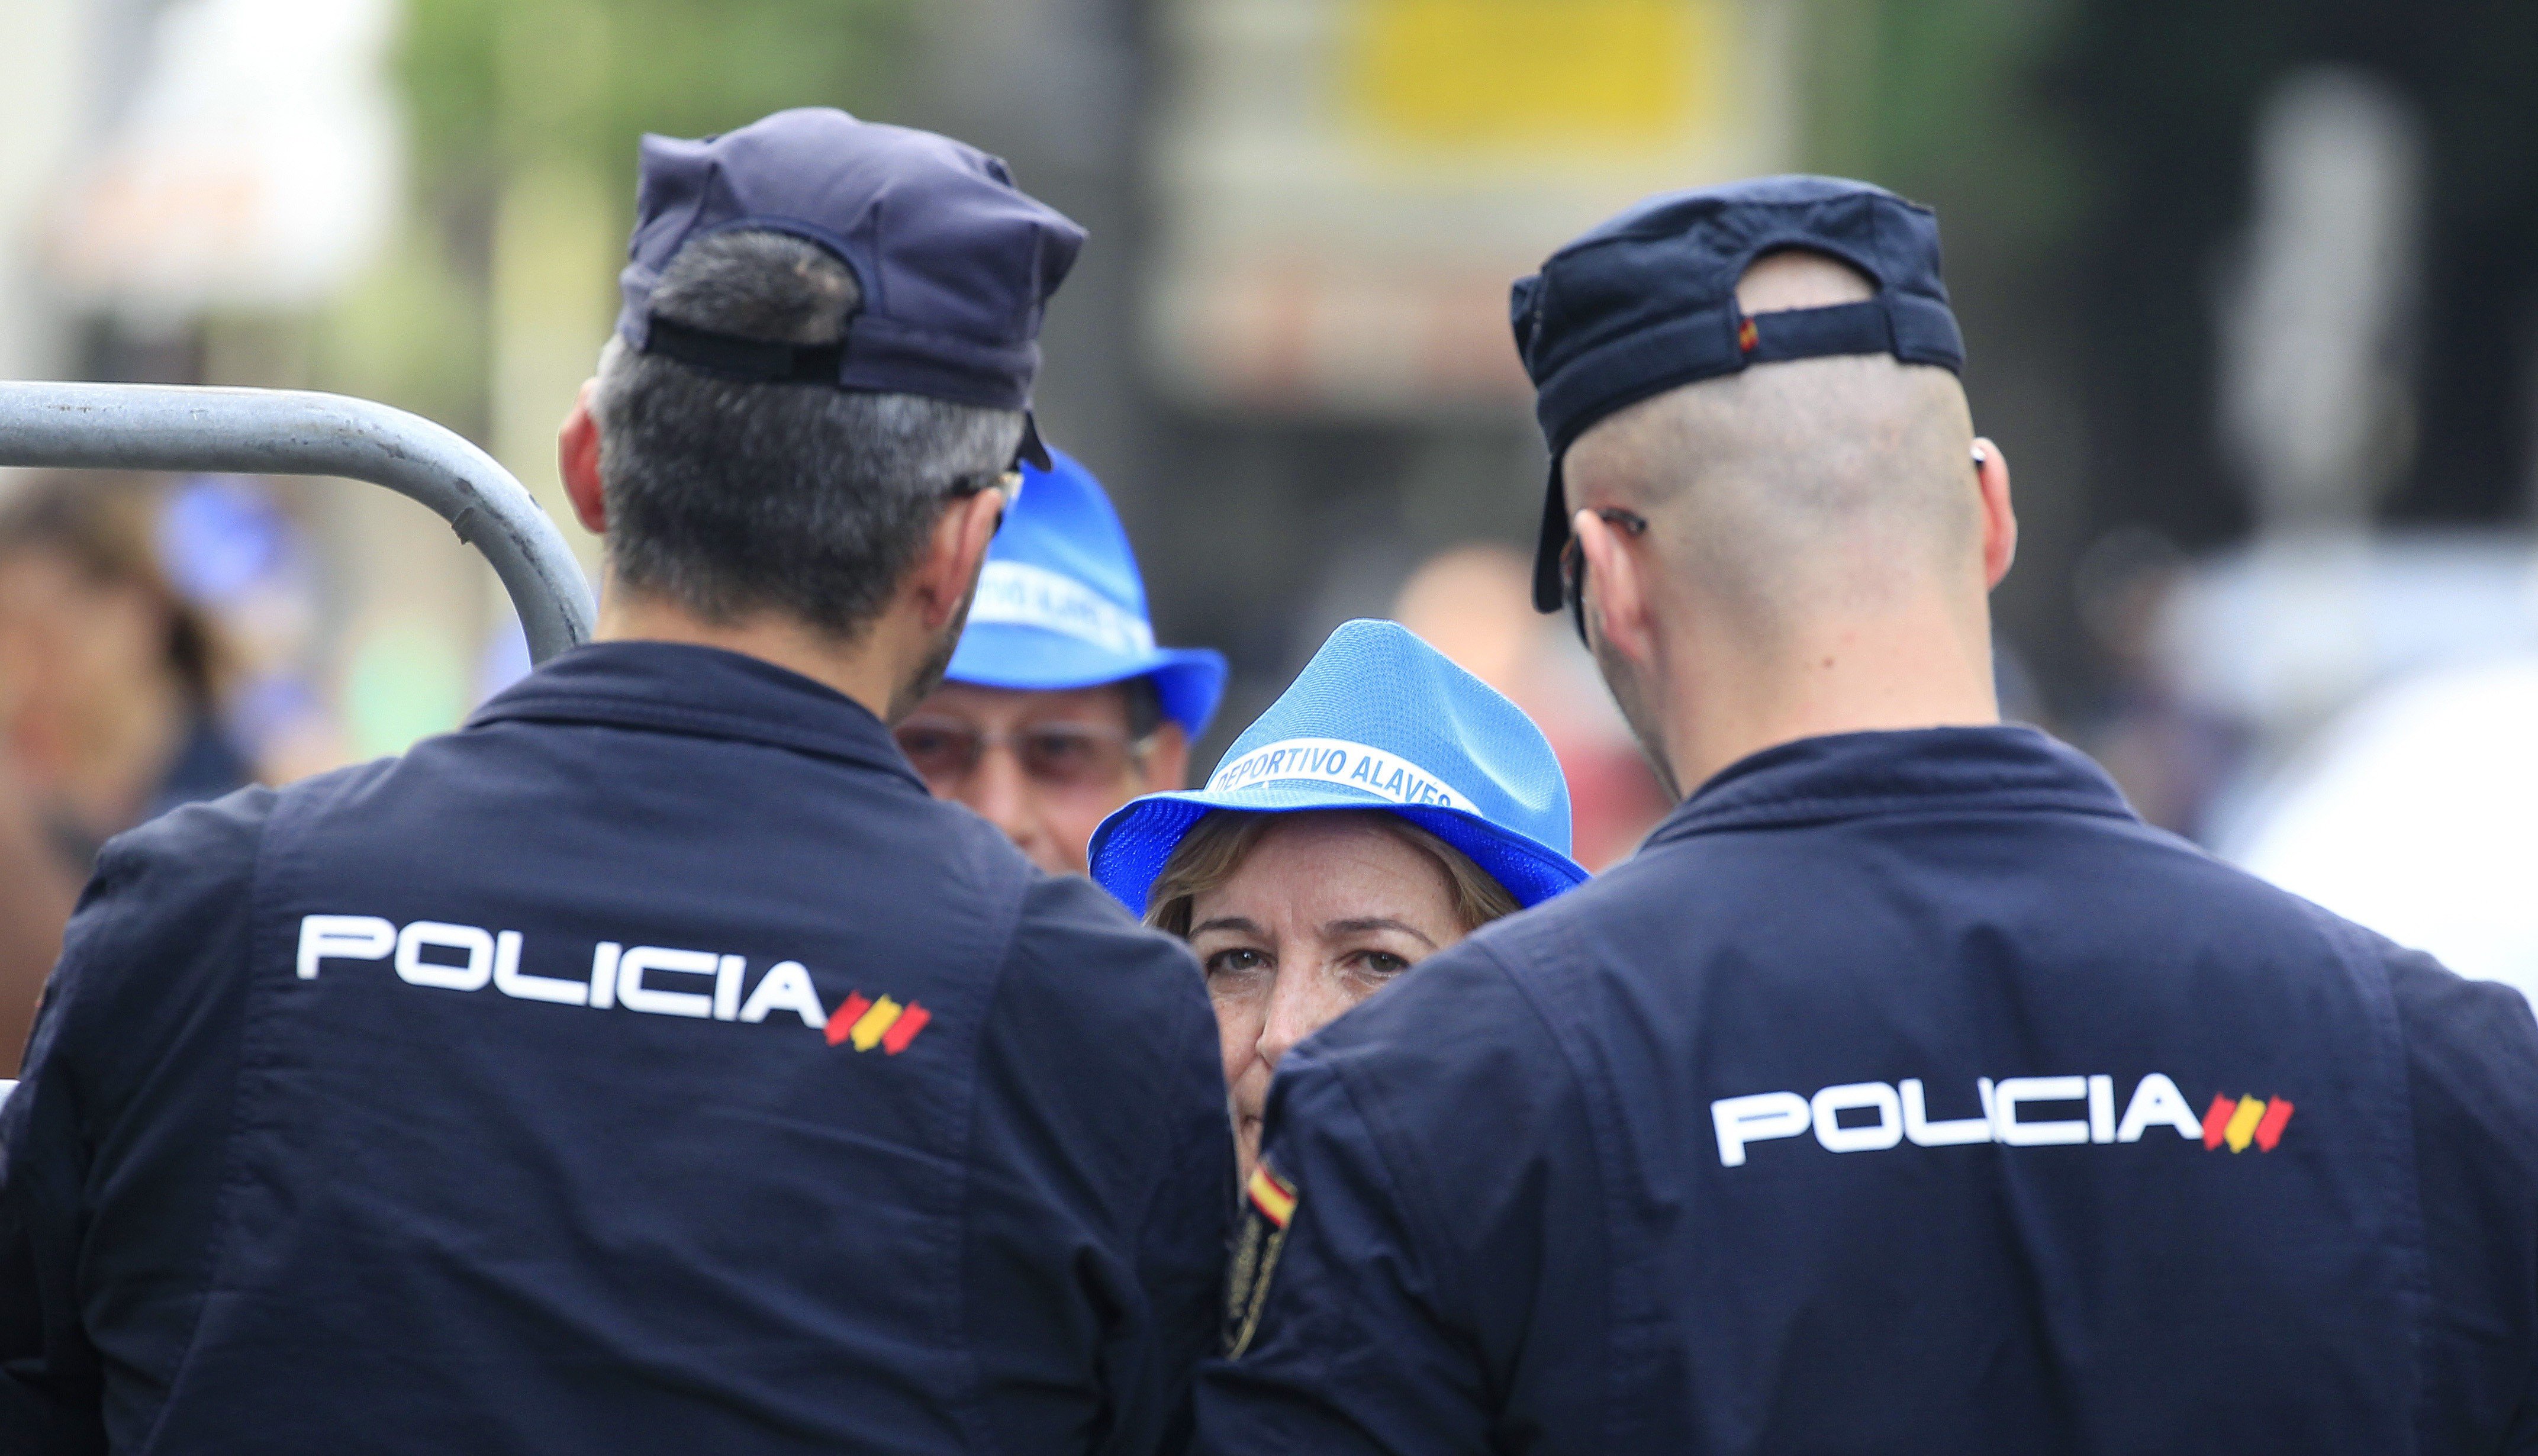 La Policia busca voluntaris per desplaçar-se a Catalunya davant l'1-O